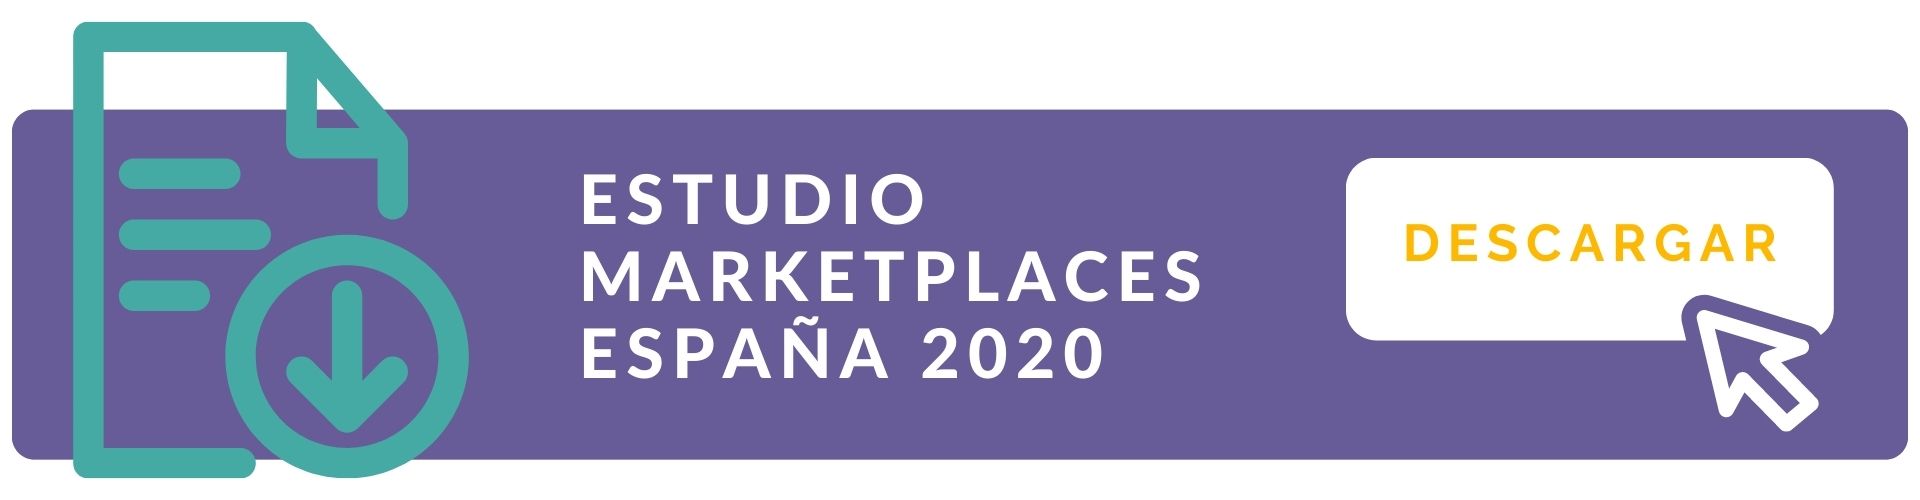 Descargar Estudio Marketplaces 2020 by Tandem Up